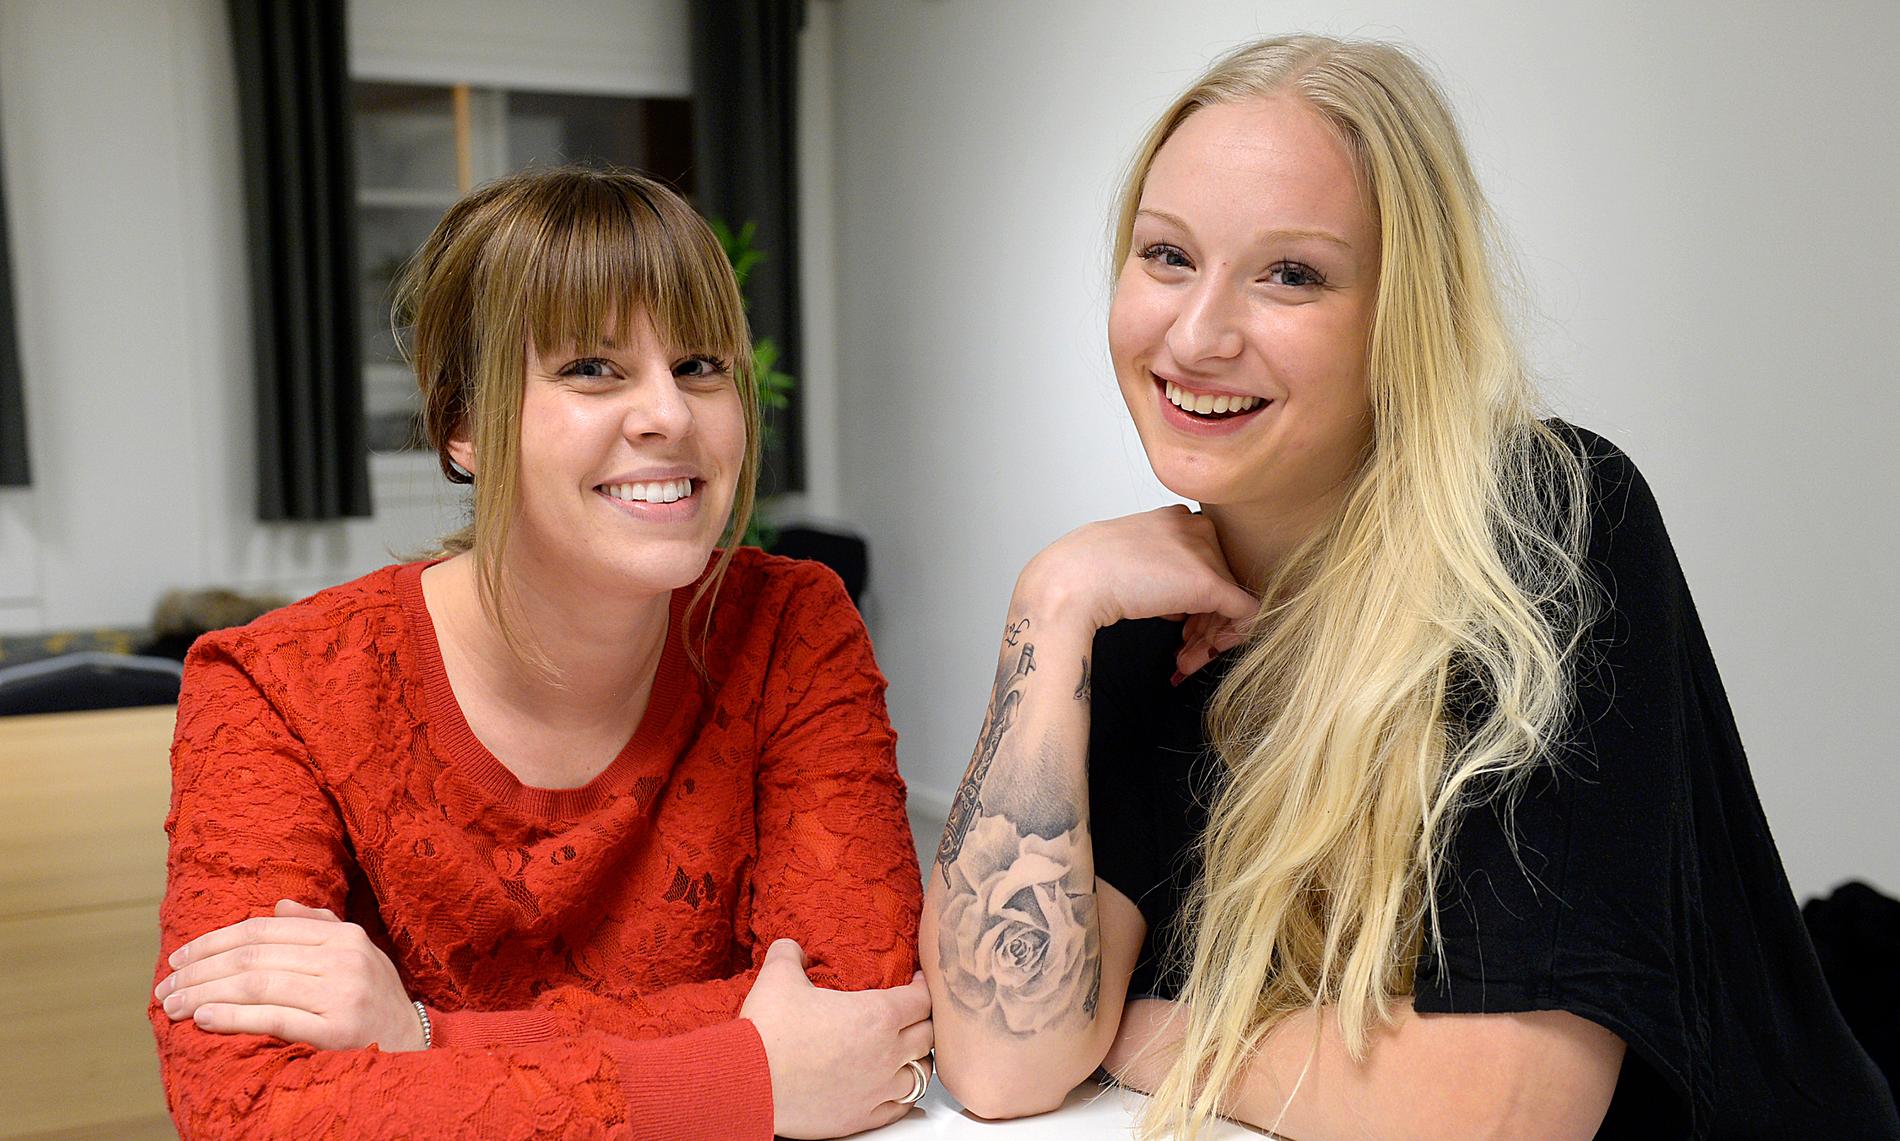 Emma Blomdal och Julia Östfeldt träffades i gruppterapi. De bestämde sig för att starta Tillsammans för att hjälpa varandra – och andra.